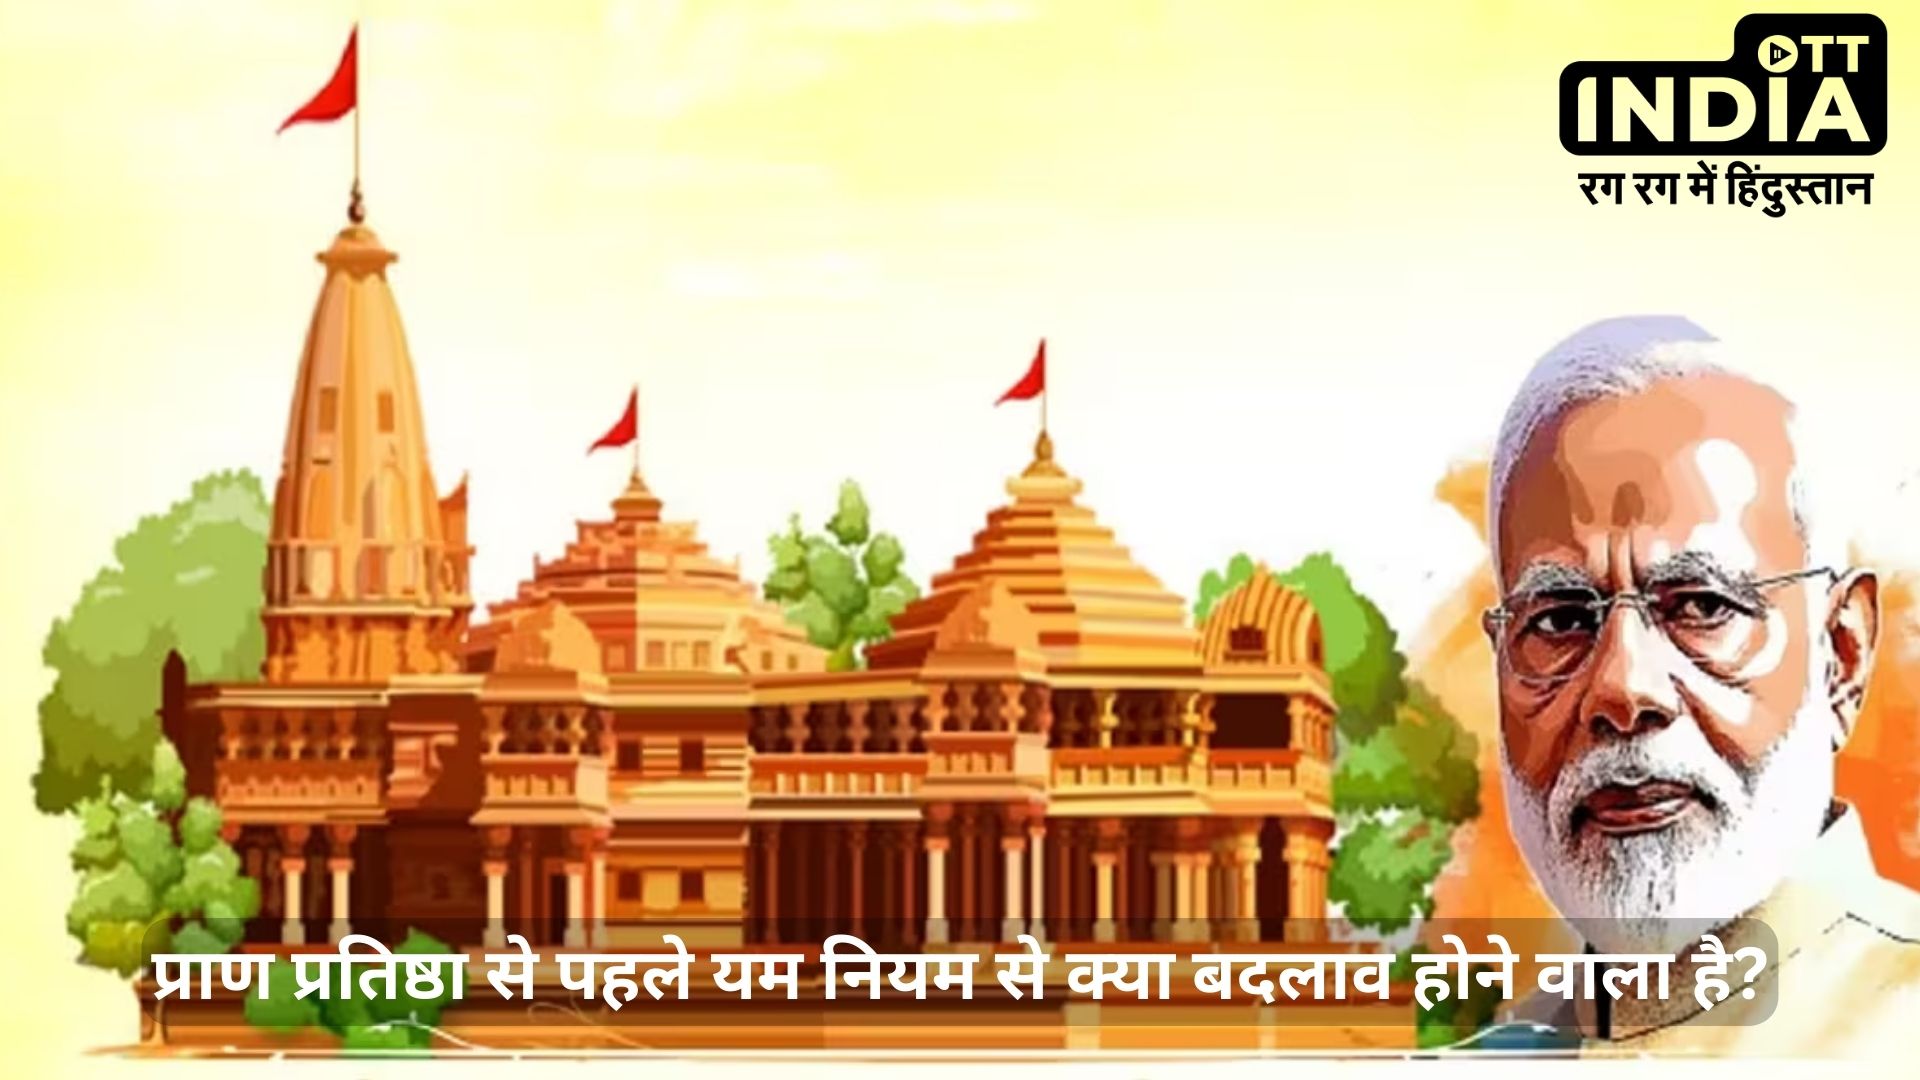 Modi and Ram Mandir: राम मंदिर प्राण प्रतिष्ठा कार्यक्रम के लिए कौन से नियमों का पालन करेंगे पीएम मोदी?